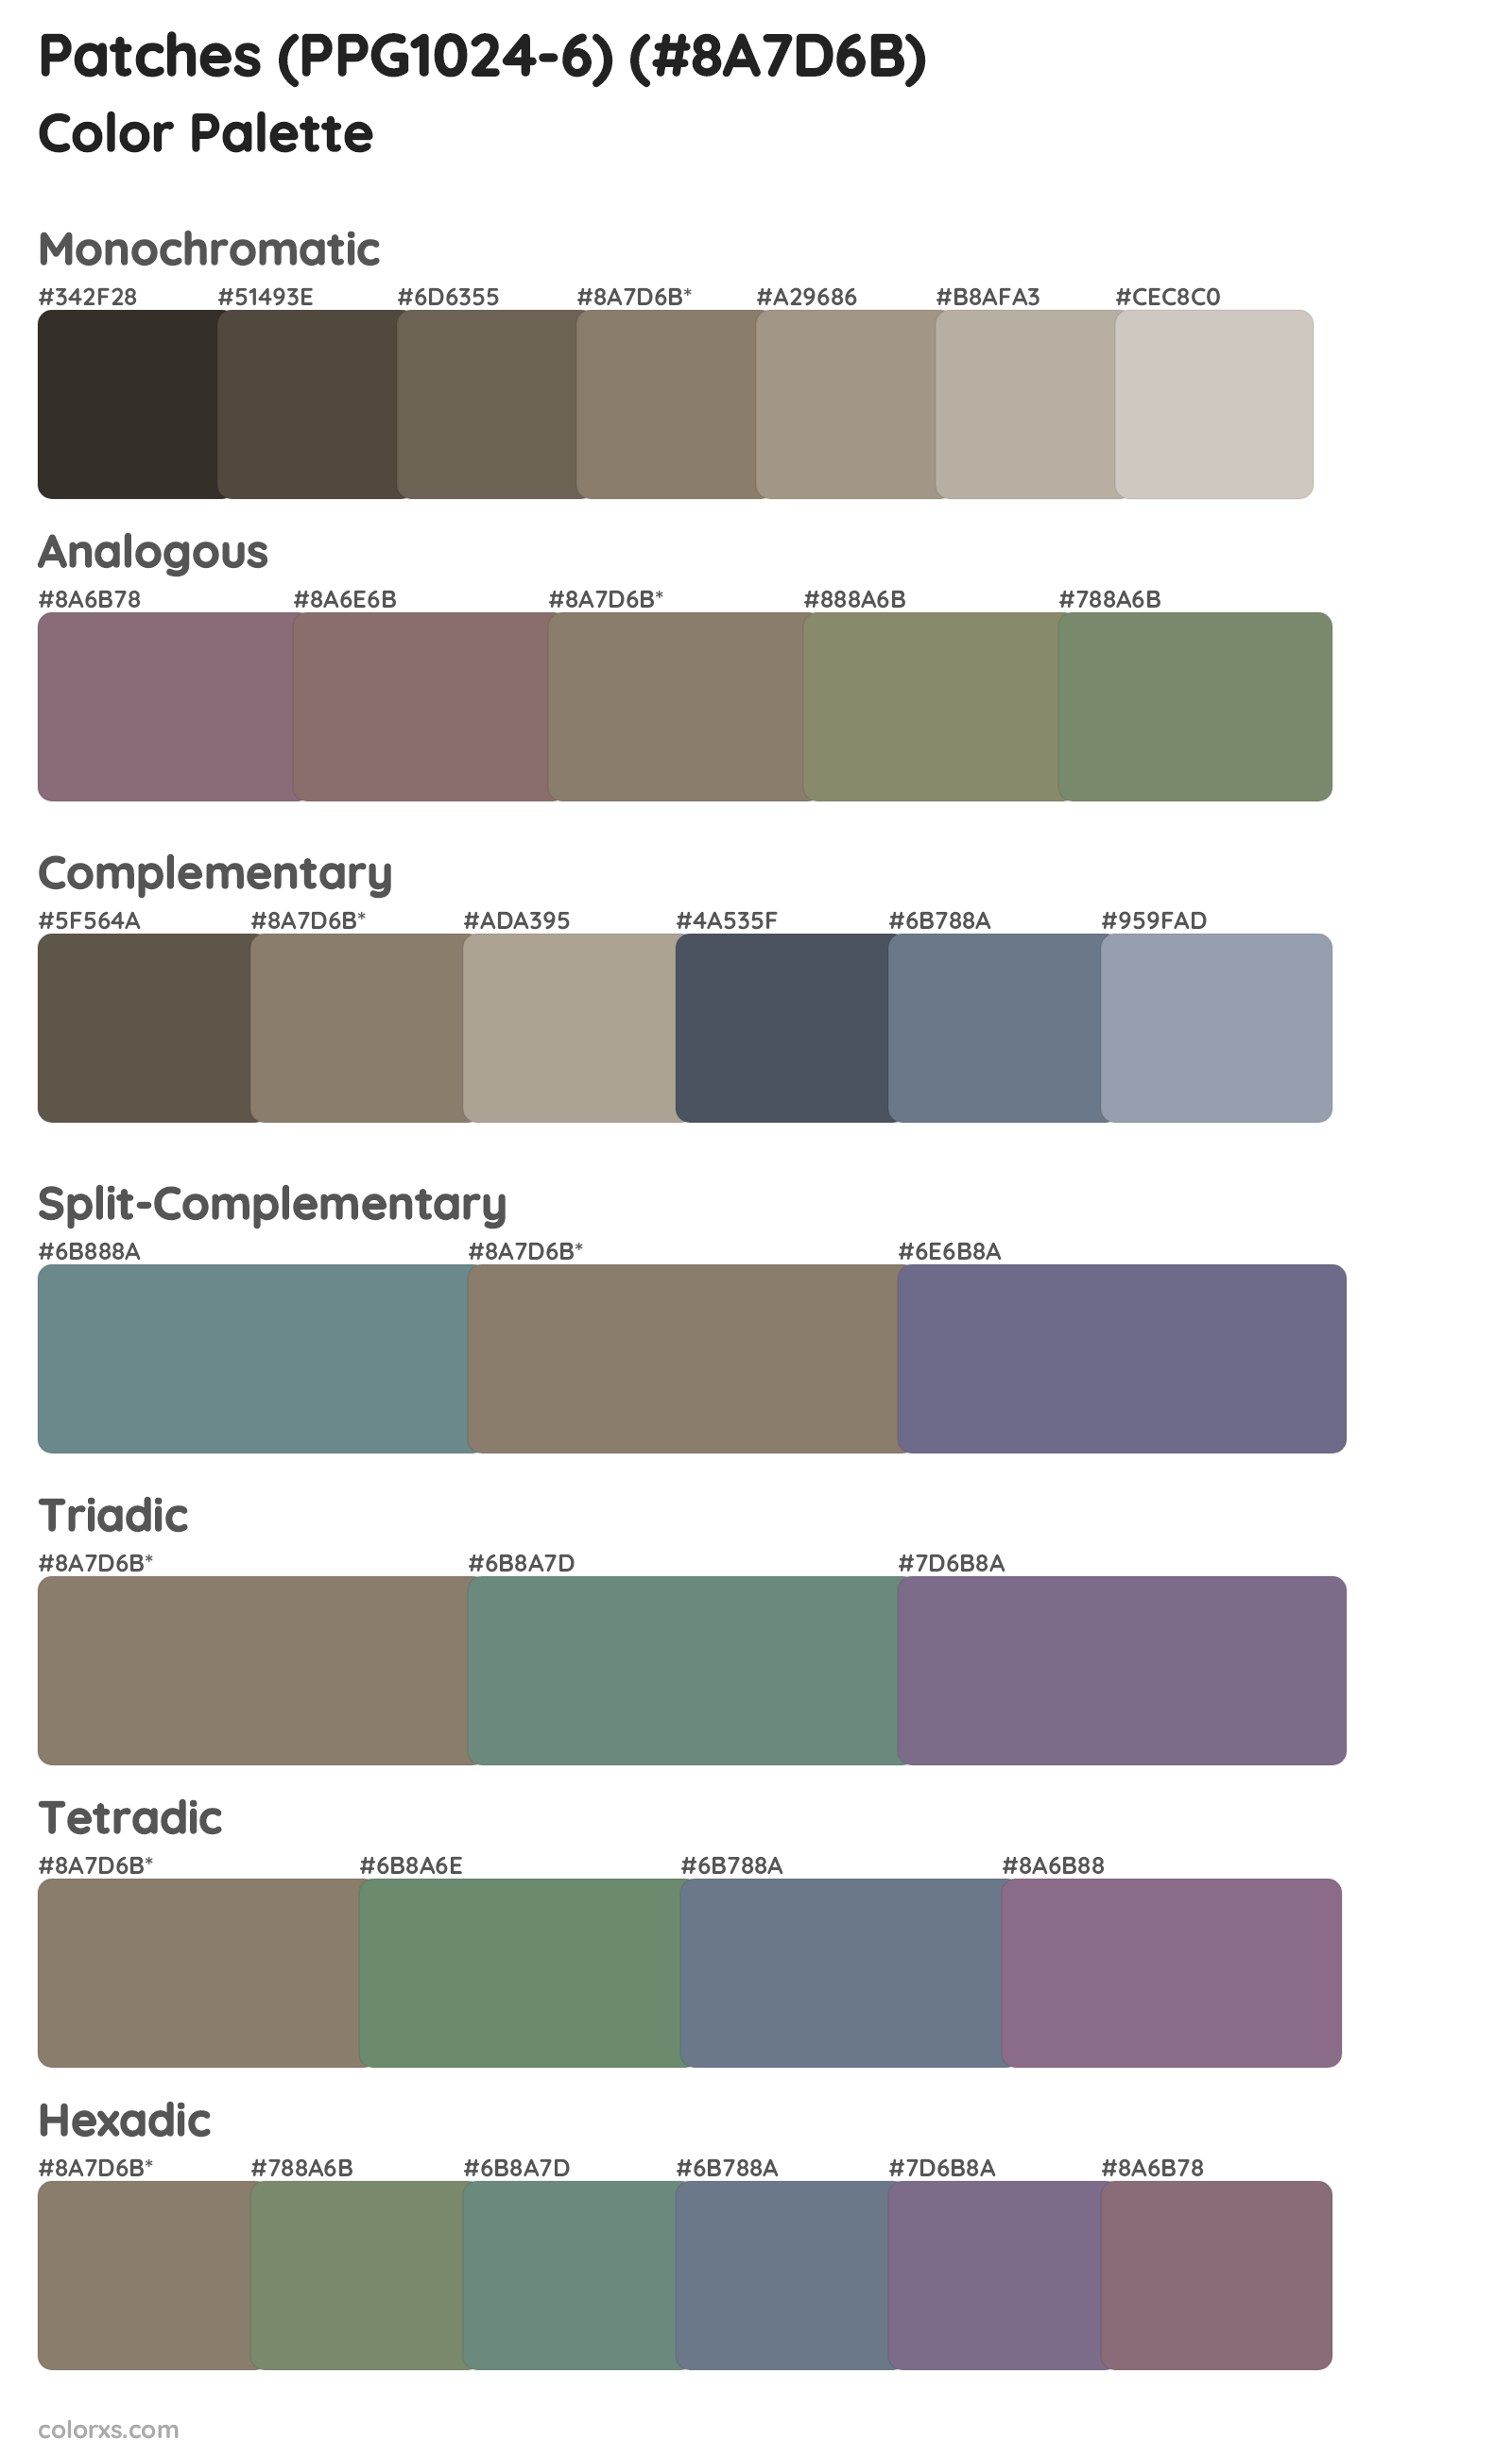 Patches (PPG1024-6) Color Scheme Palettes